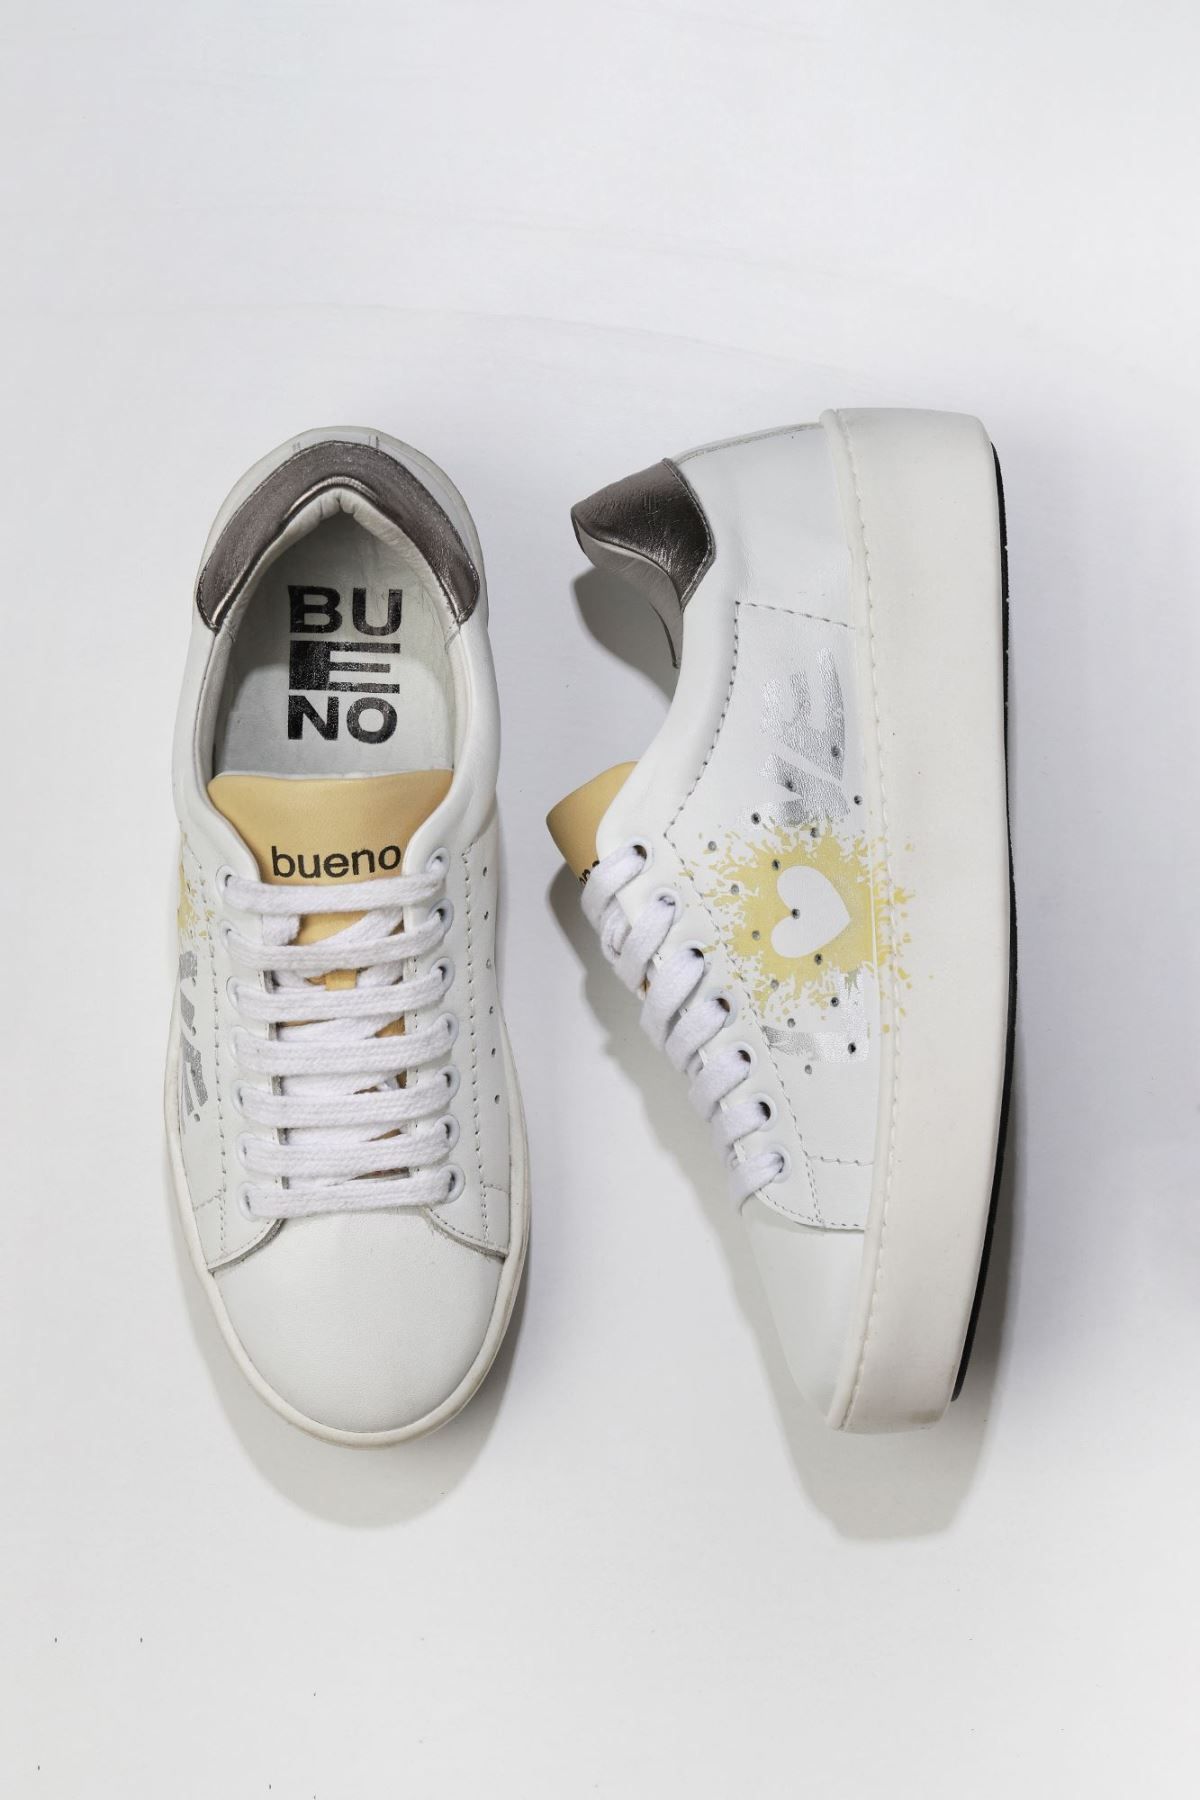 BUENO Shoes Beyaz B09c03 Kadın Spor Ayakkabı